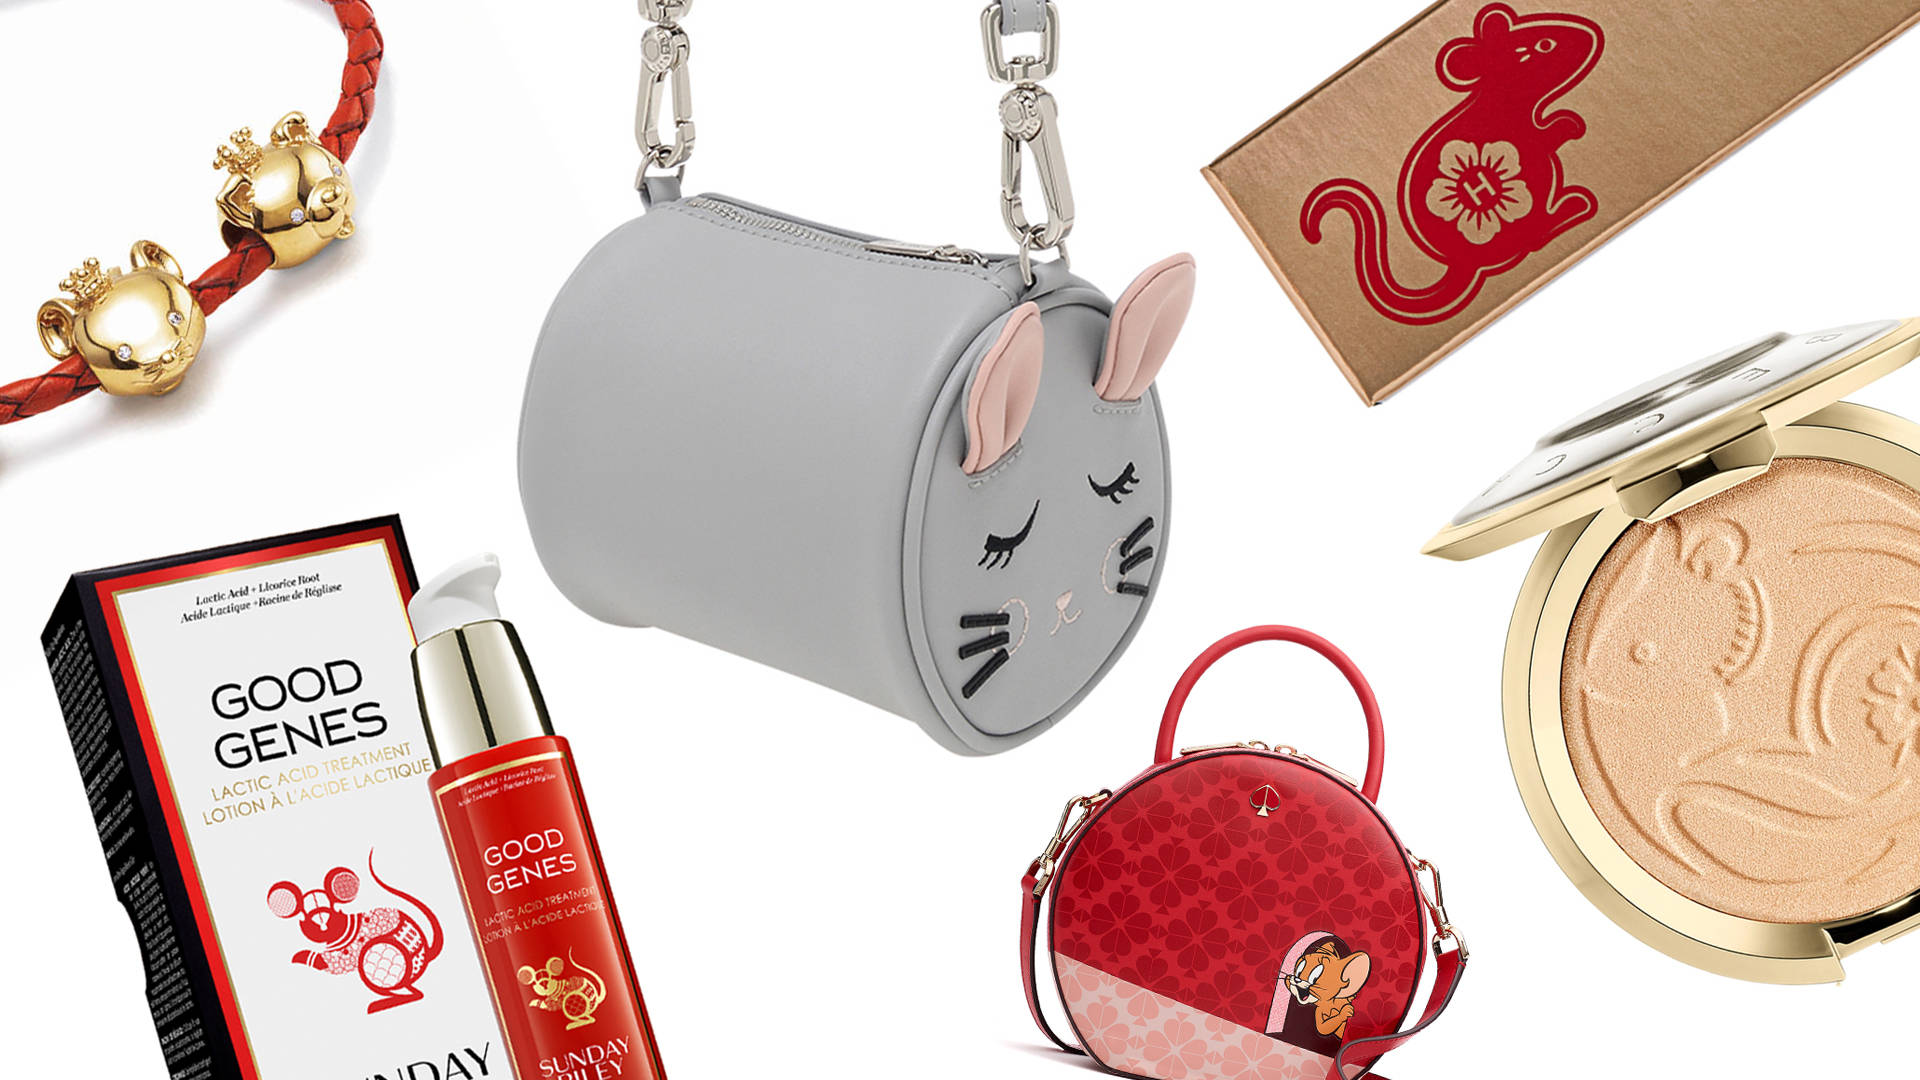 Rat Theme Bag And Makeup